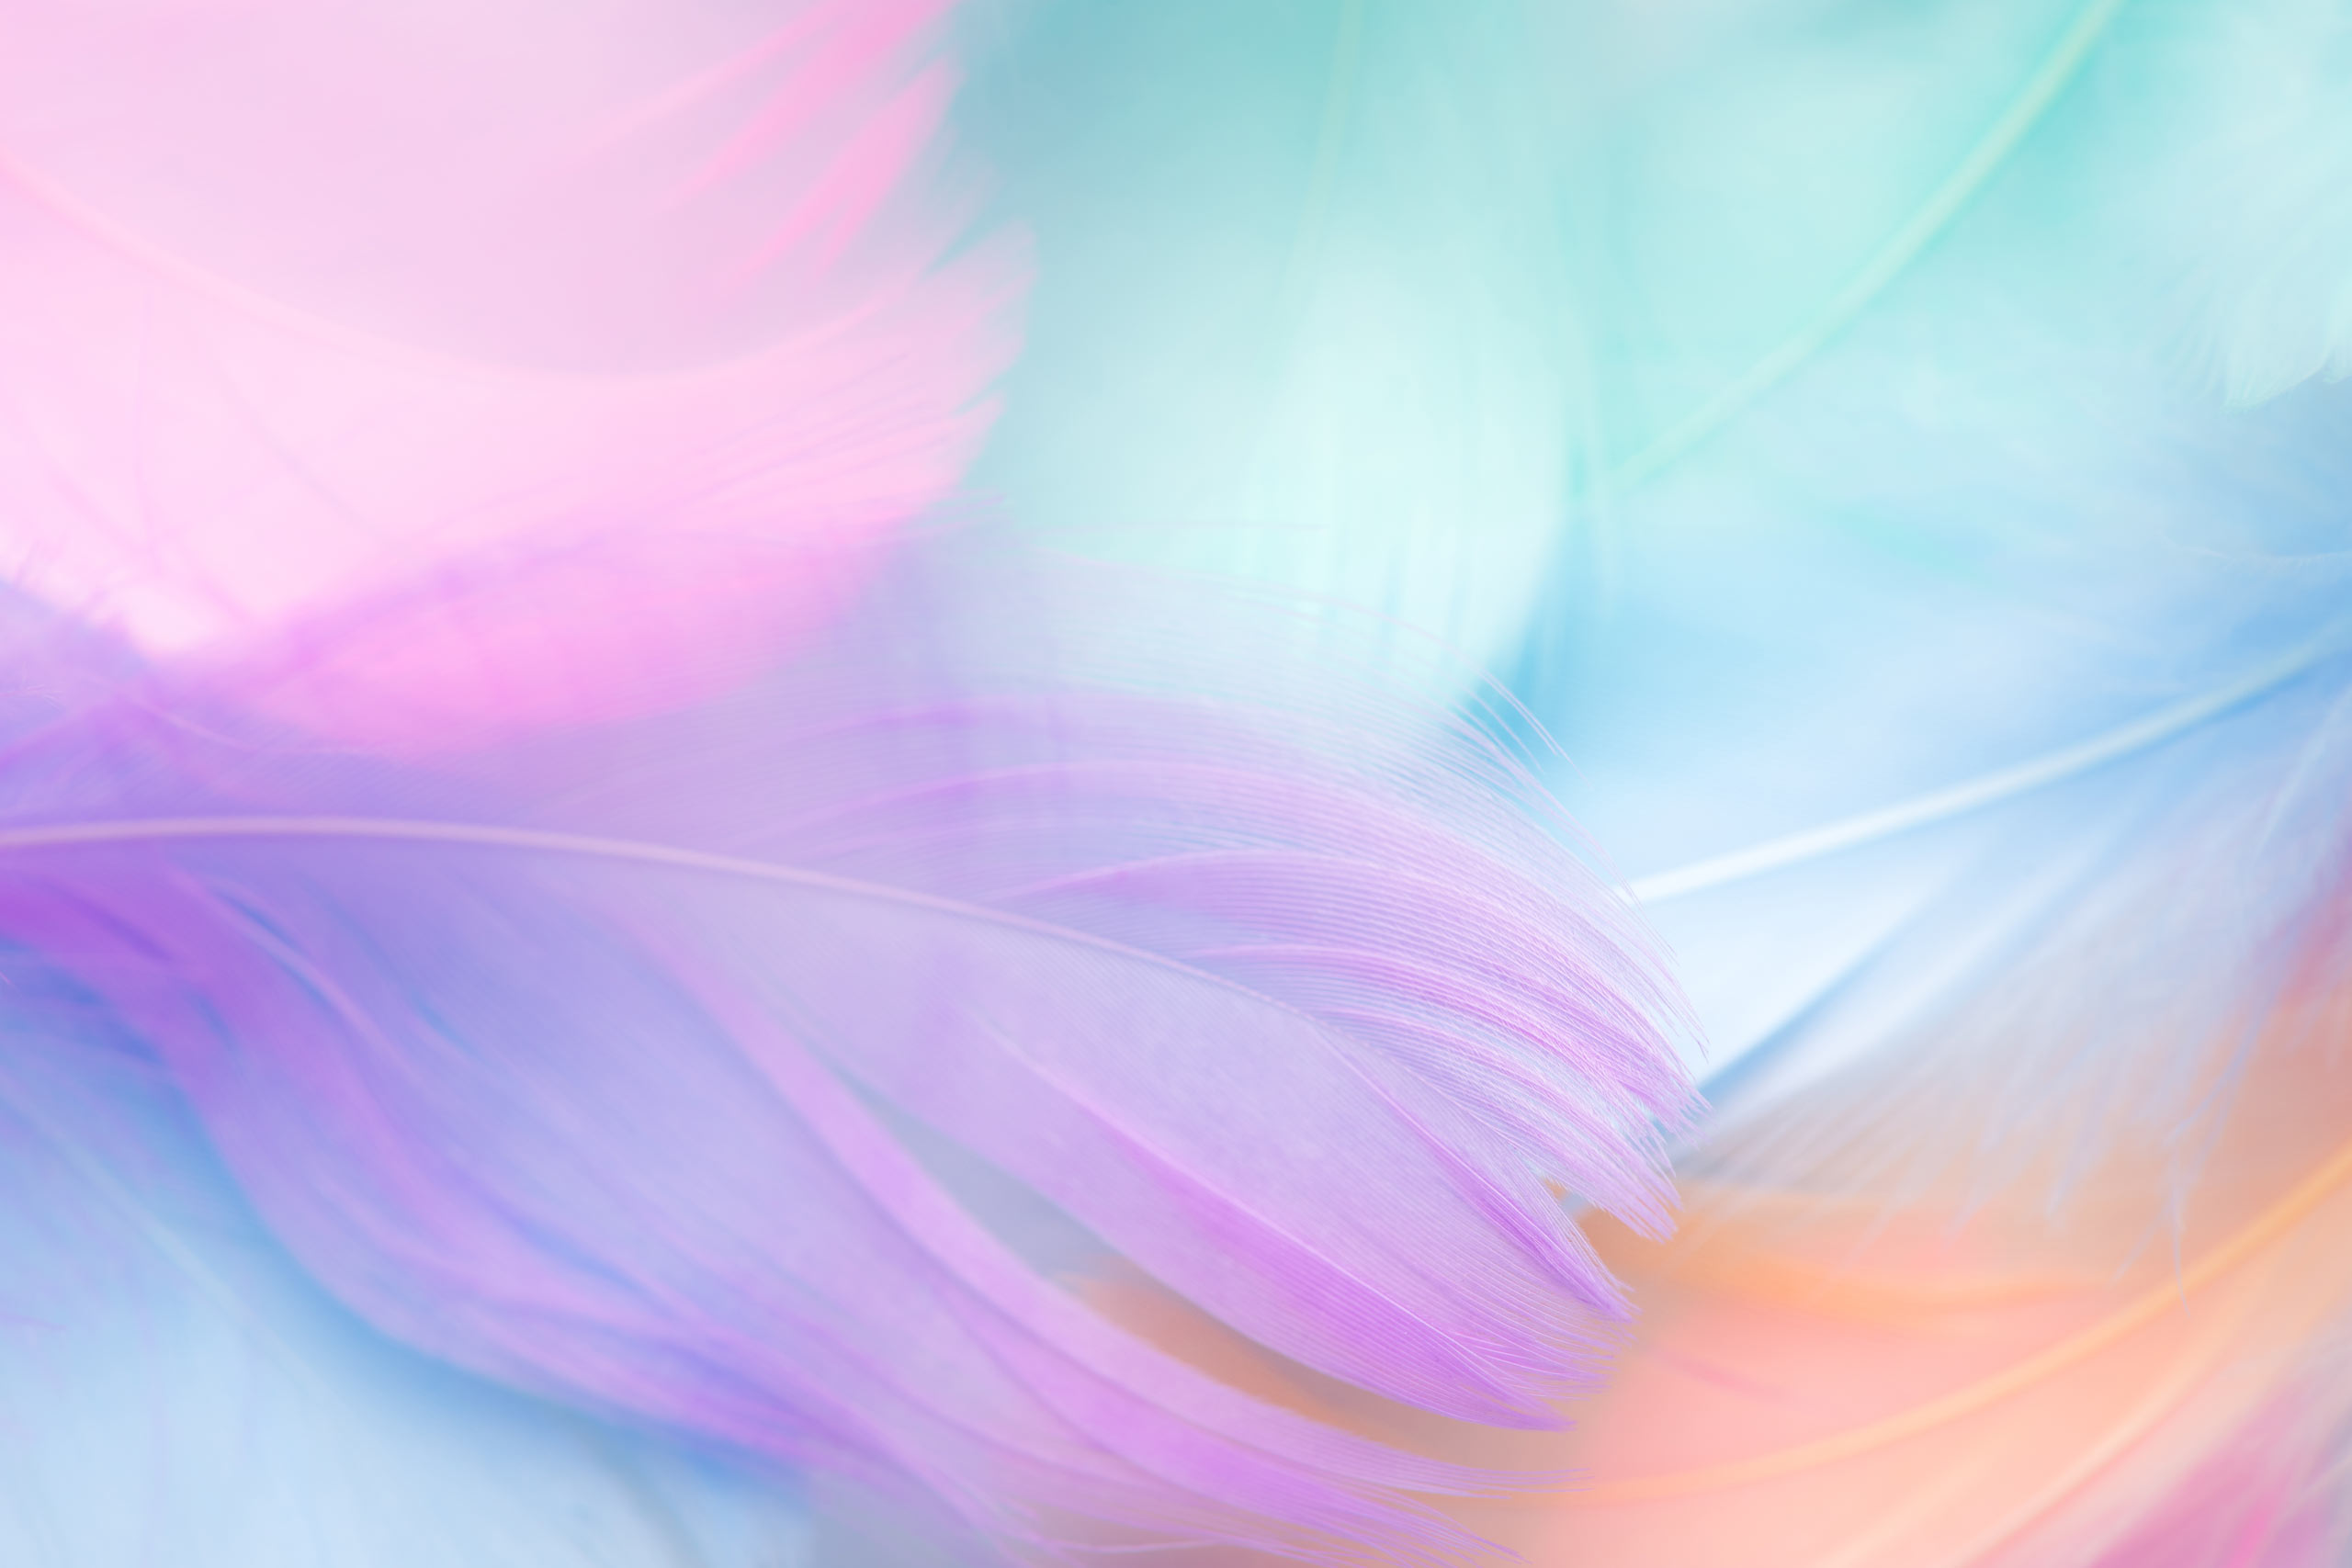  Пастельный фон для Фотошопа перья розового, пурпурного и фиолетового цветов.